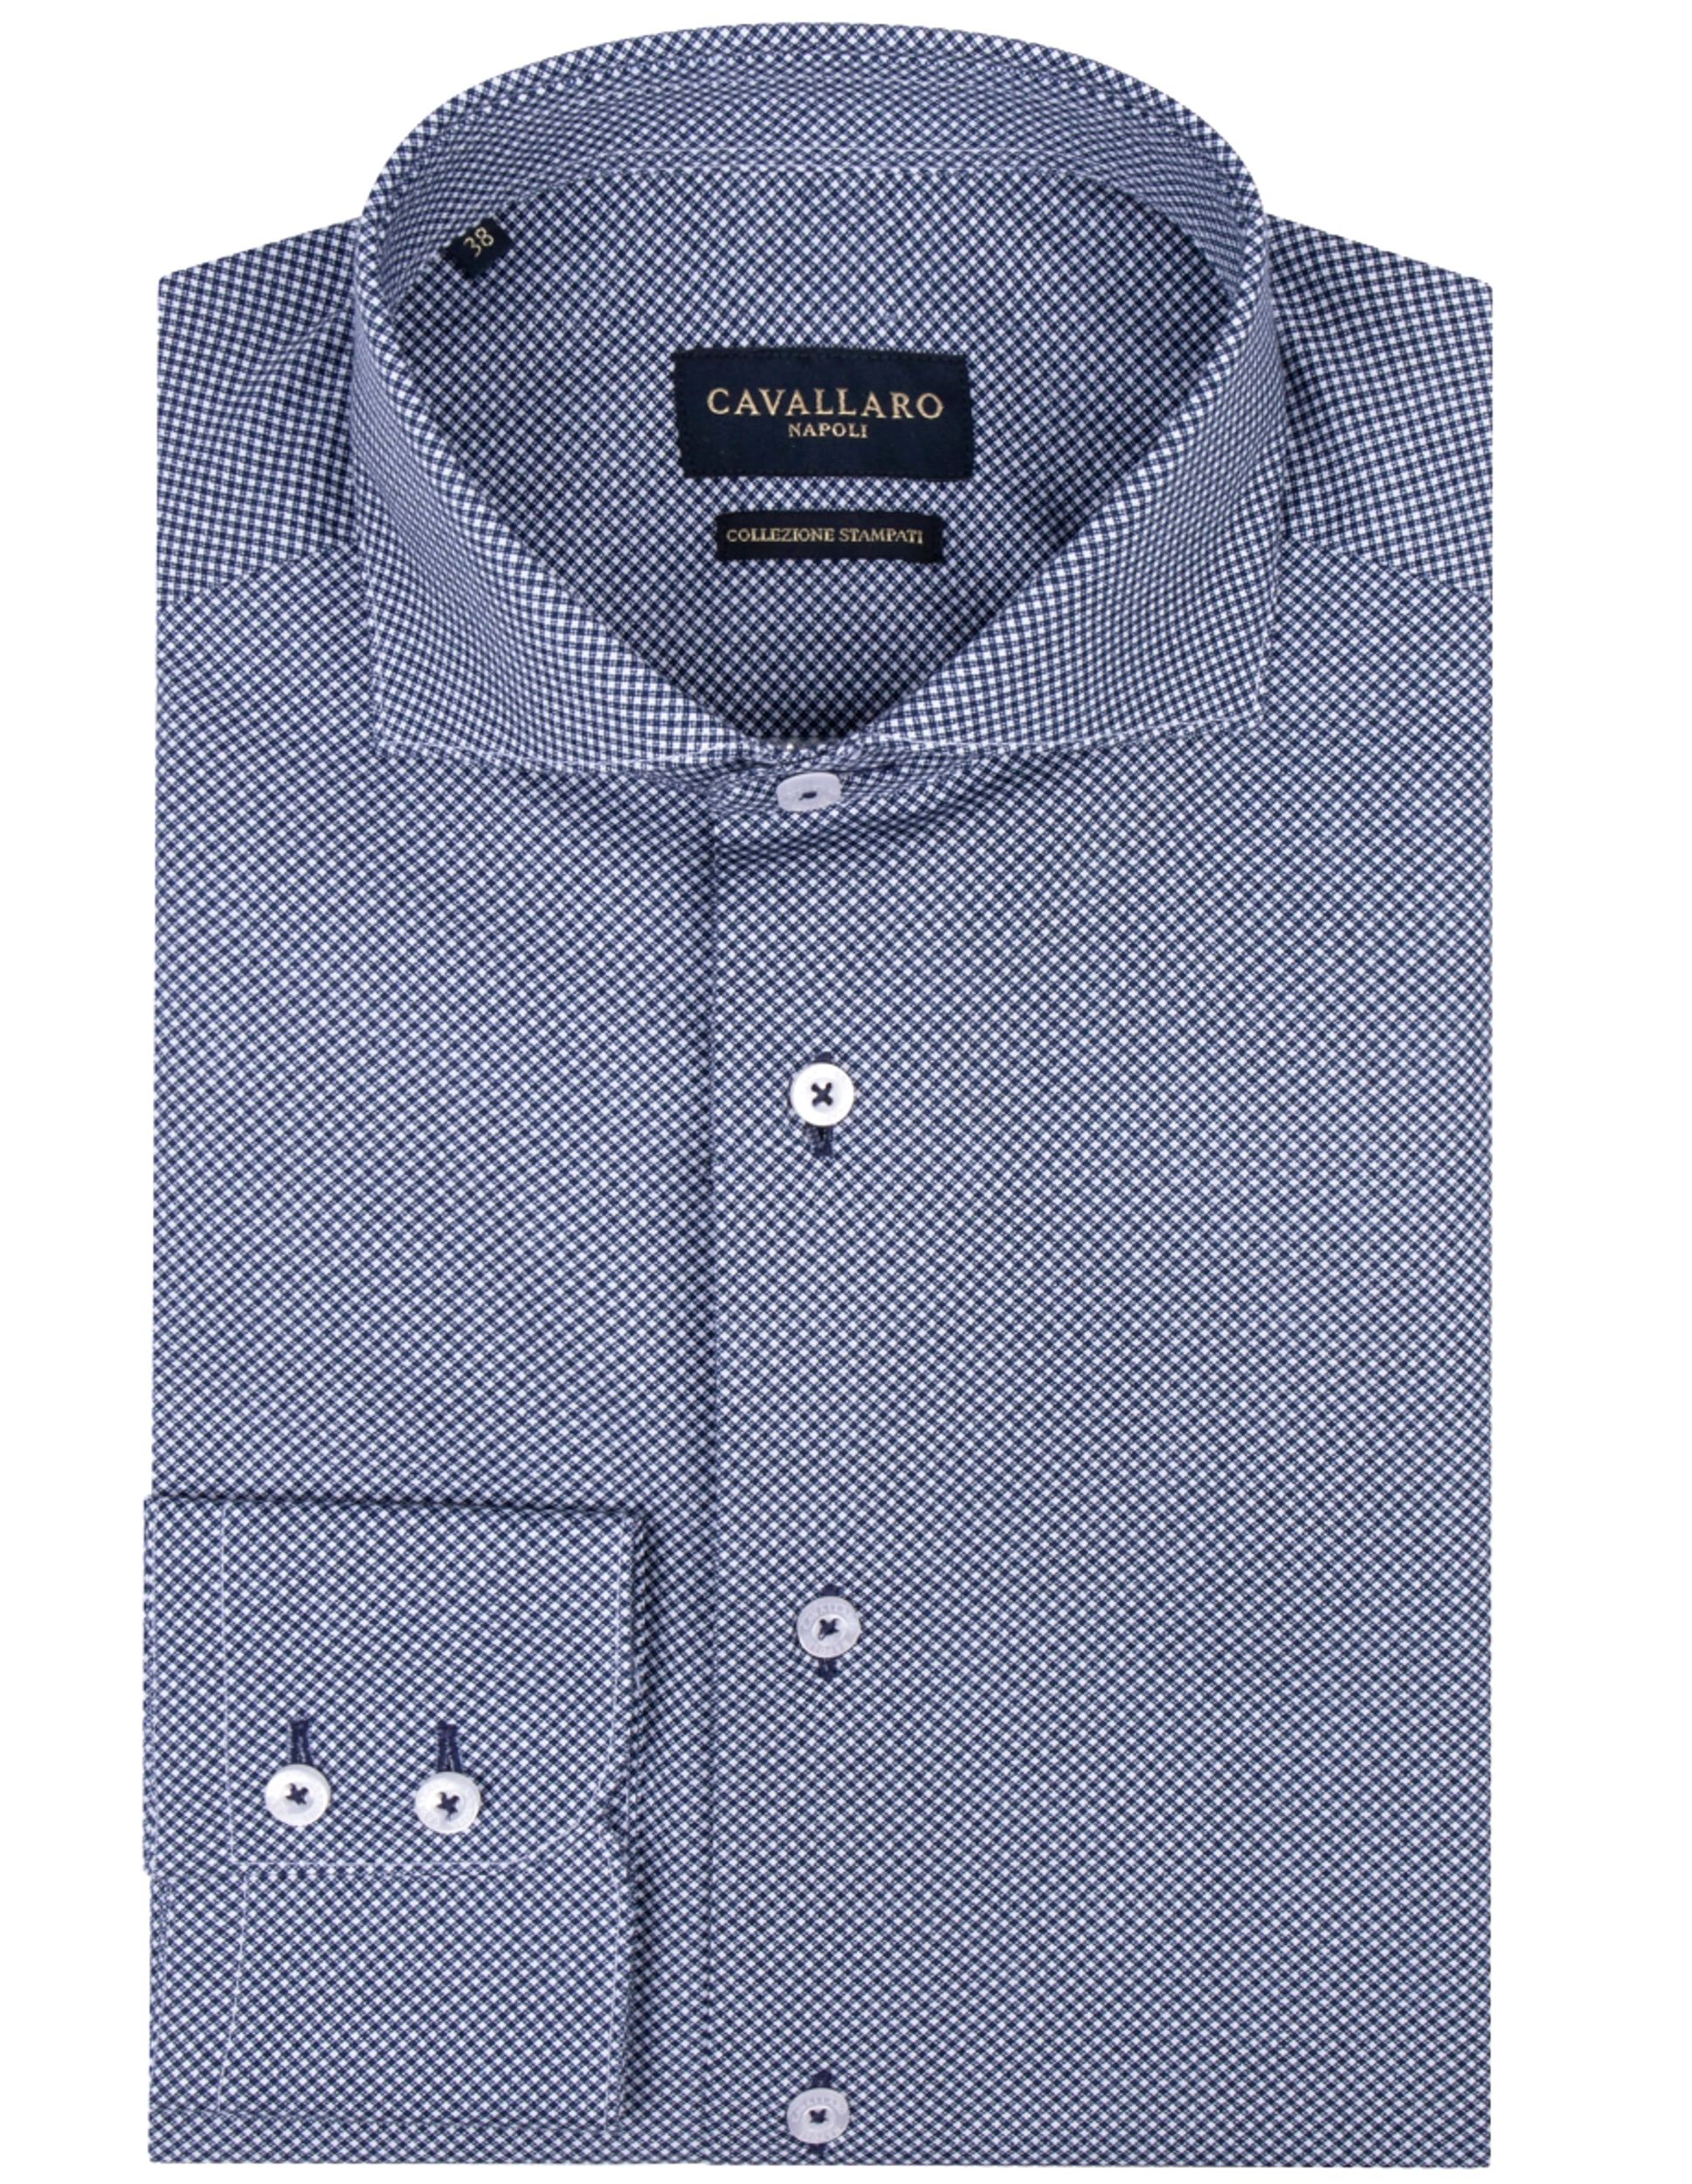 Cavallaro Casual Overhemd LM Blauw kleine ruit 091509-001-36